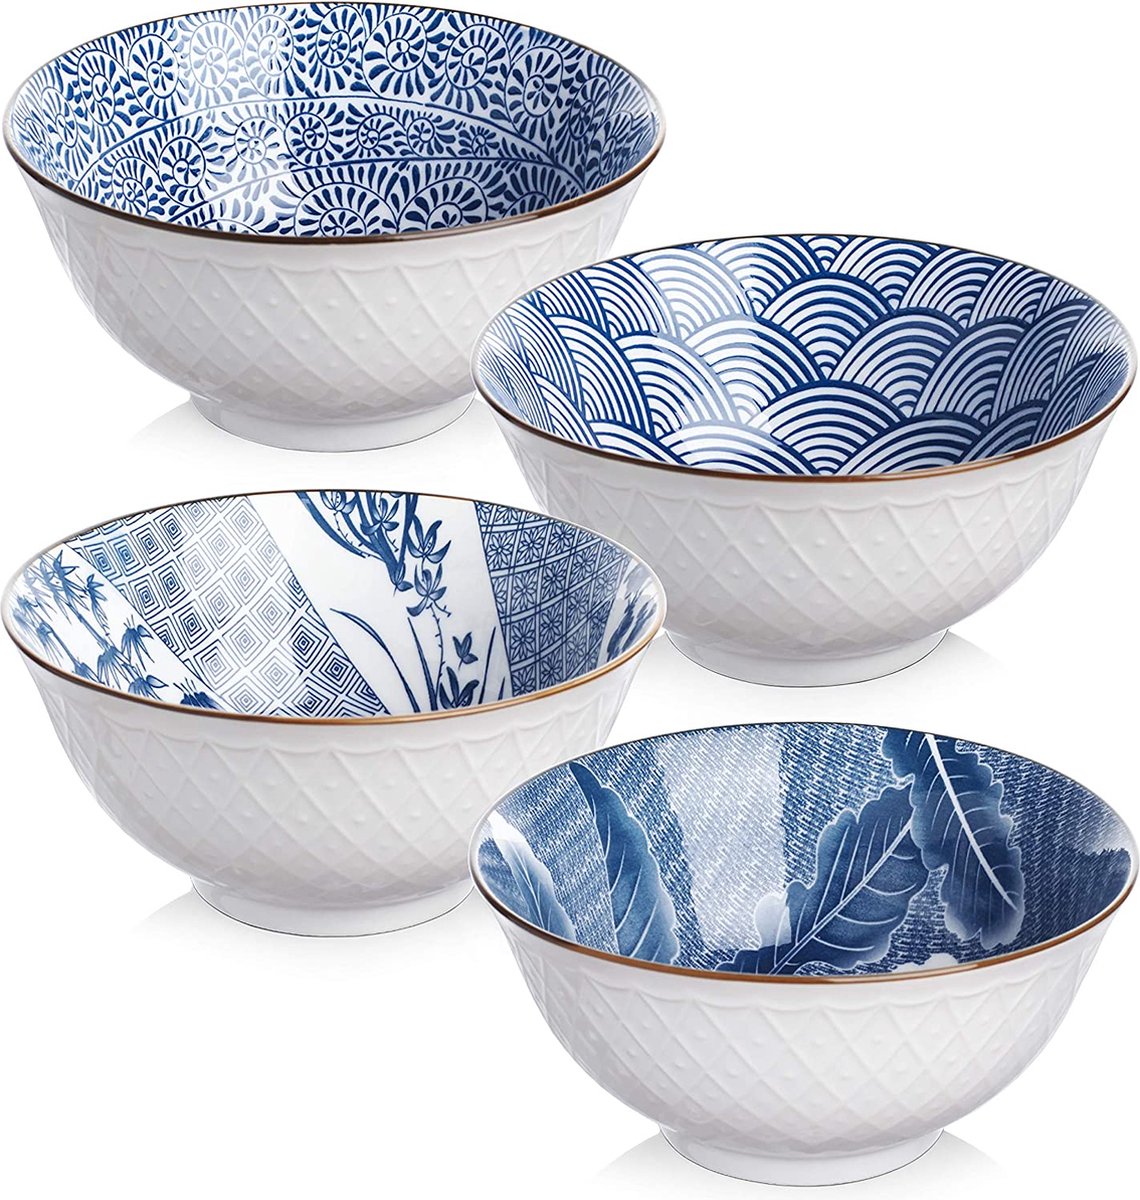 Japanse stijl keramische kommen voor rijst, soep, salade, snack, fruit, 24 oz/700ML Ramen Bowls, magnetron & vaatwasmachinebestendig, blauw witte patronen, servies set van 4